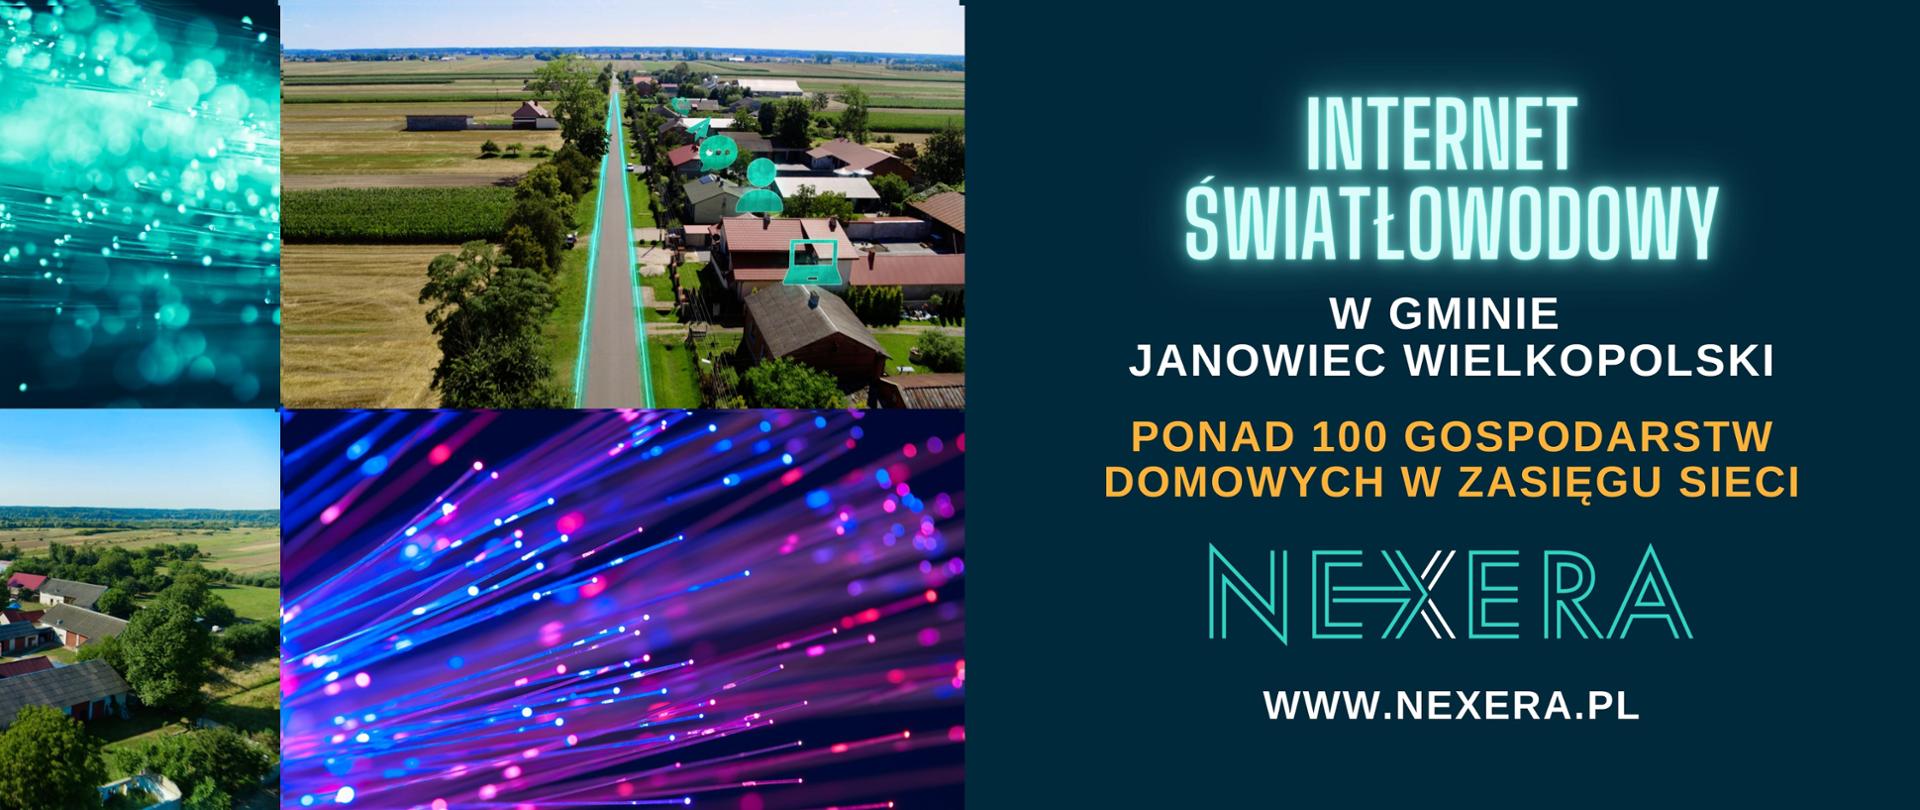 Sieć światłowodowa NEXERY jest doprowadzona do blisko 700 gospodarstw domowych w miejscowościach Bielawy, Brudzyń, Gącz, Janowiec Wielkopolski, Janowiec-Wieś, Laskowo, Miniszewo, Ośno, Sarbinowo Drugie, Włoszanowo.